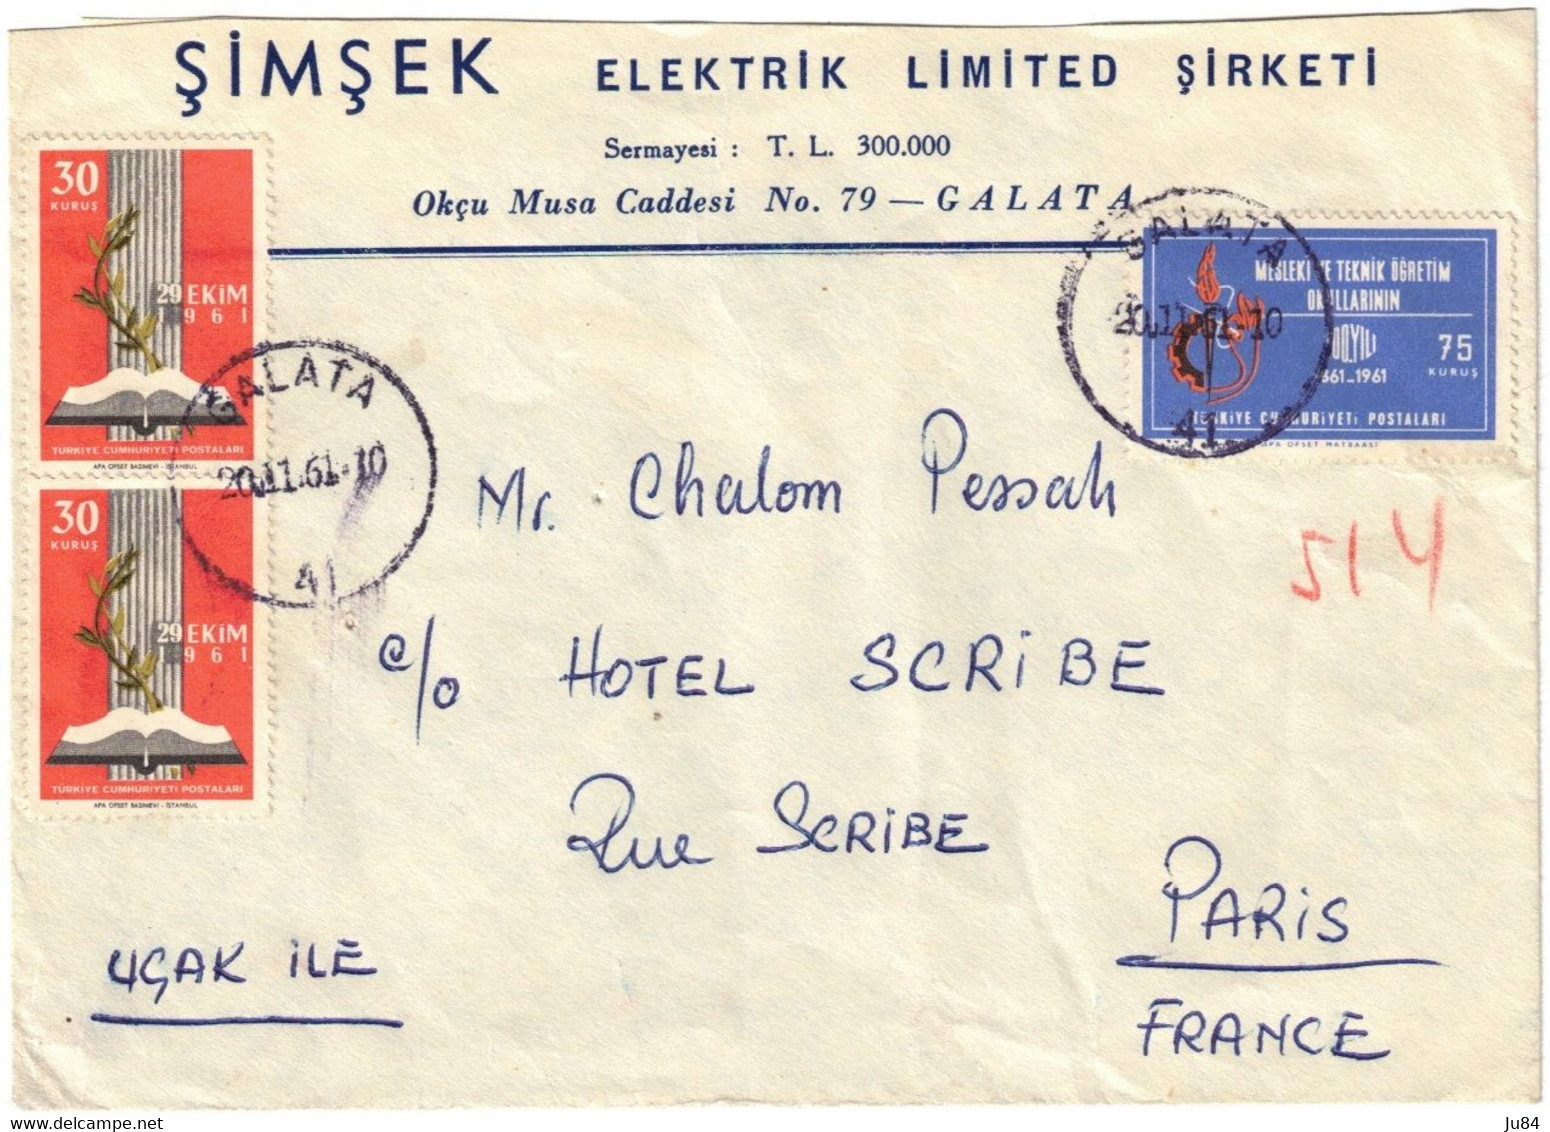 Turquie - Galata - Simsek Elektrik Limited Sirketi - Lettre Pour Hôtel Scribe Paris (France) - 20 Novembre 1961 - Storia Postale